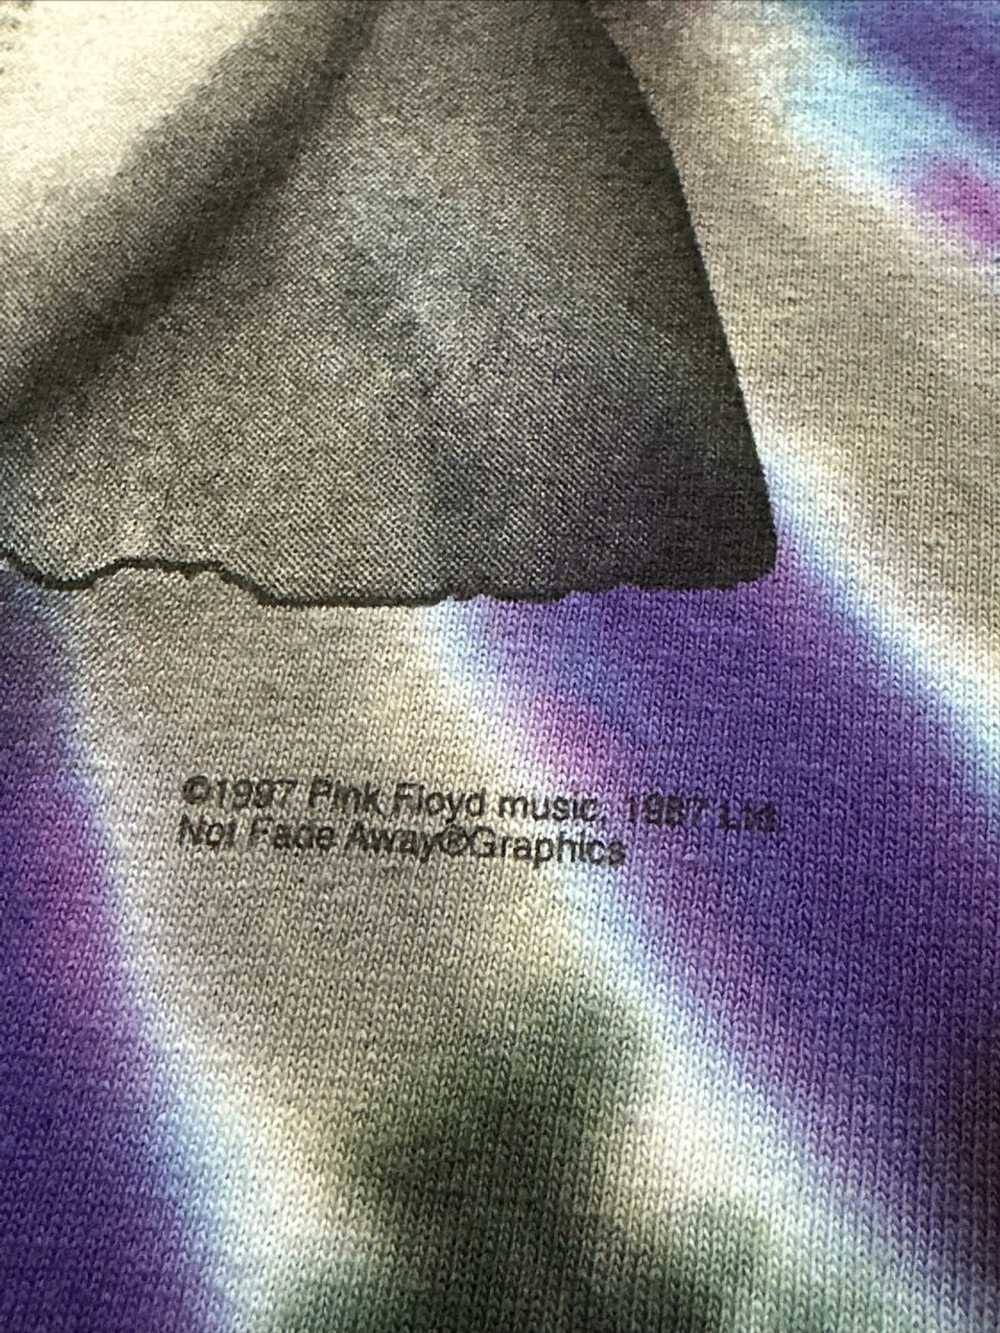 Band Tees × Pink Floyd × Vintage Vintage Pink Flo… - image 5